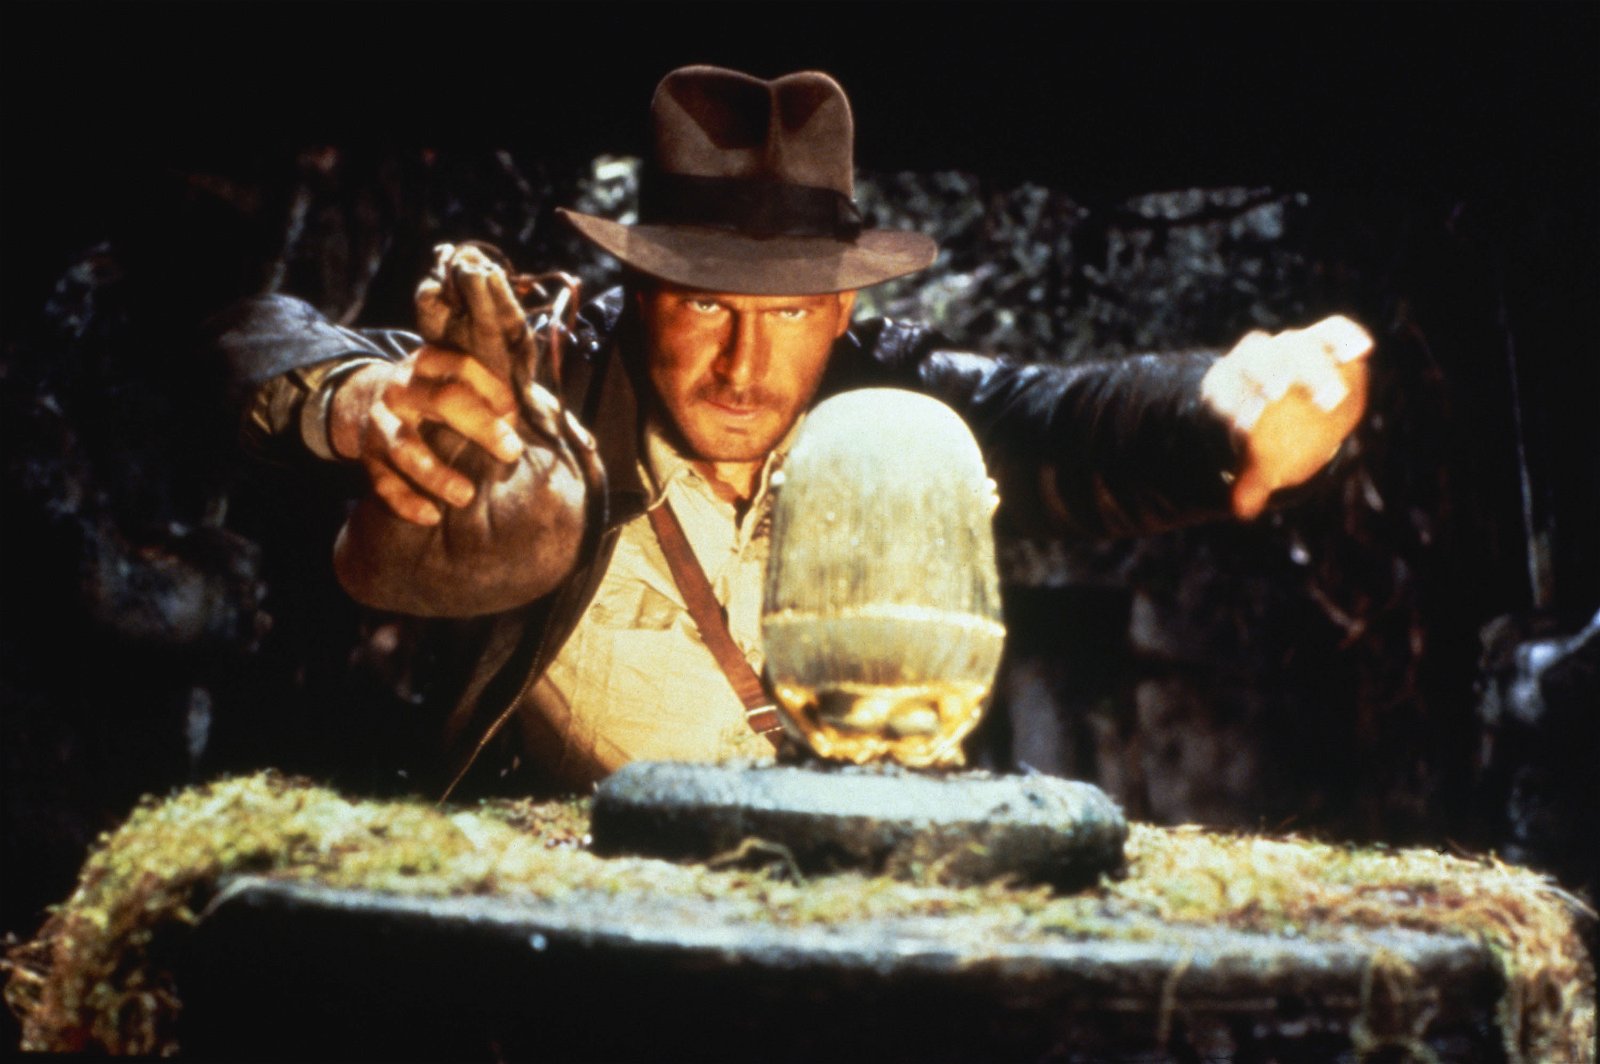 BILDER: Spana in konceptbilderna till kommande Indiana Jones 5